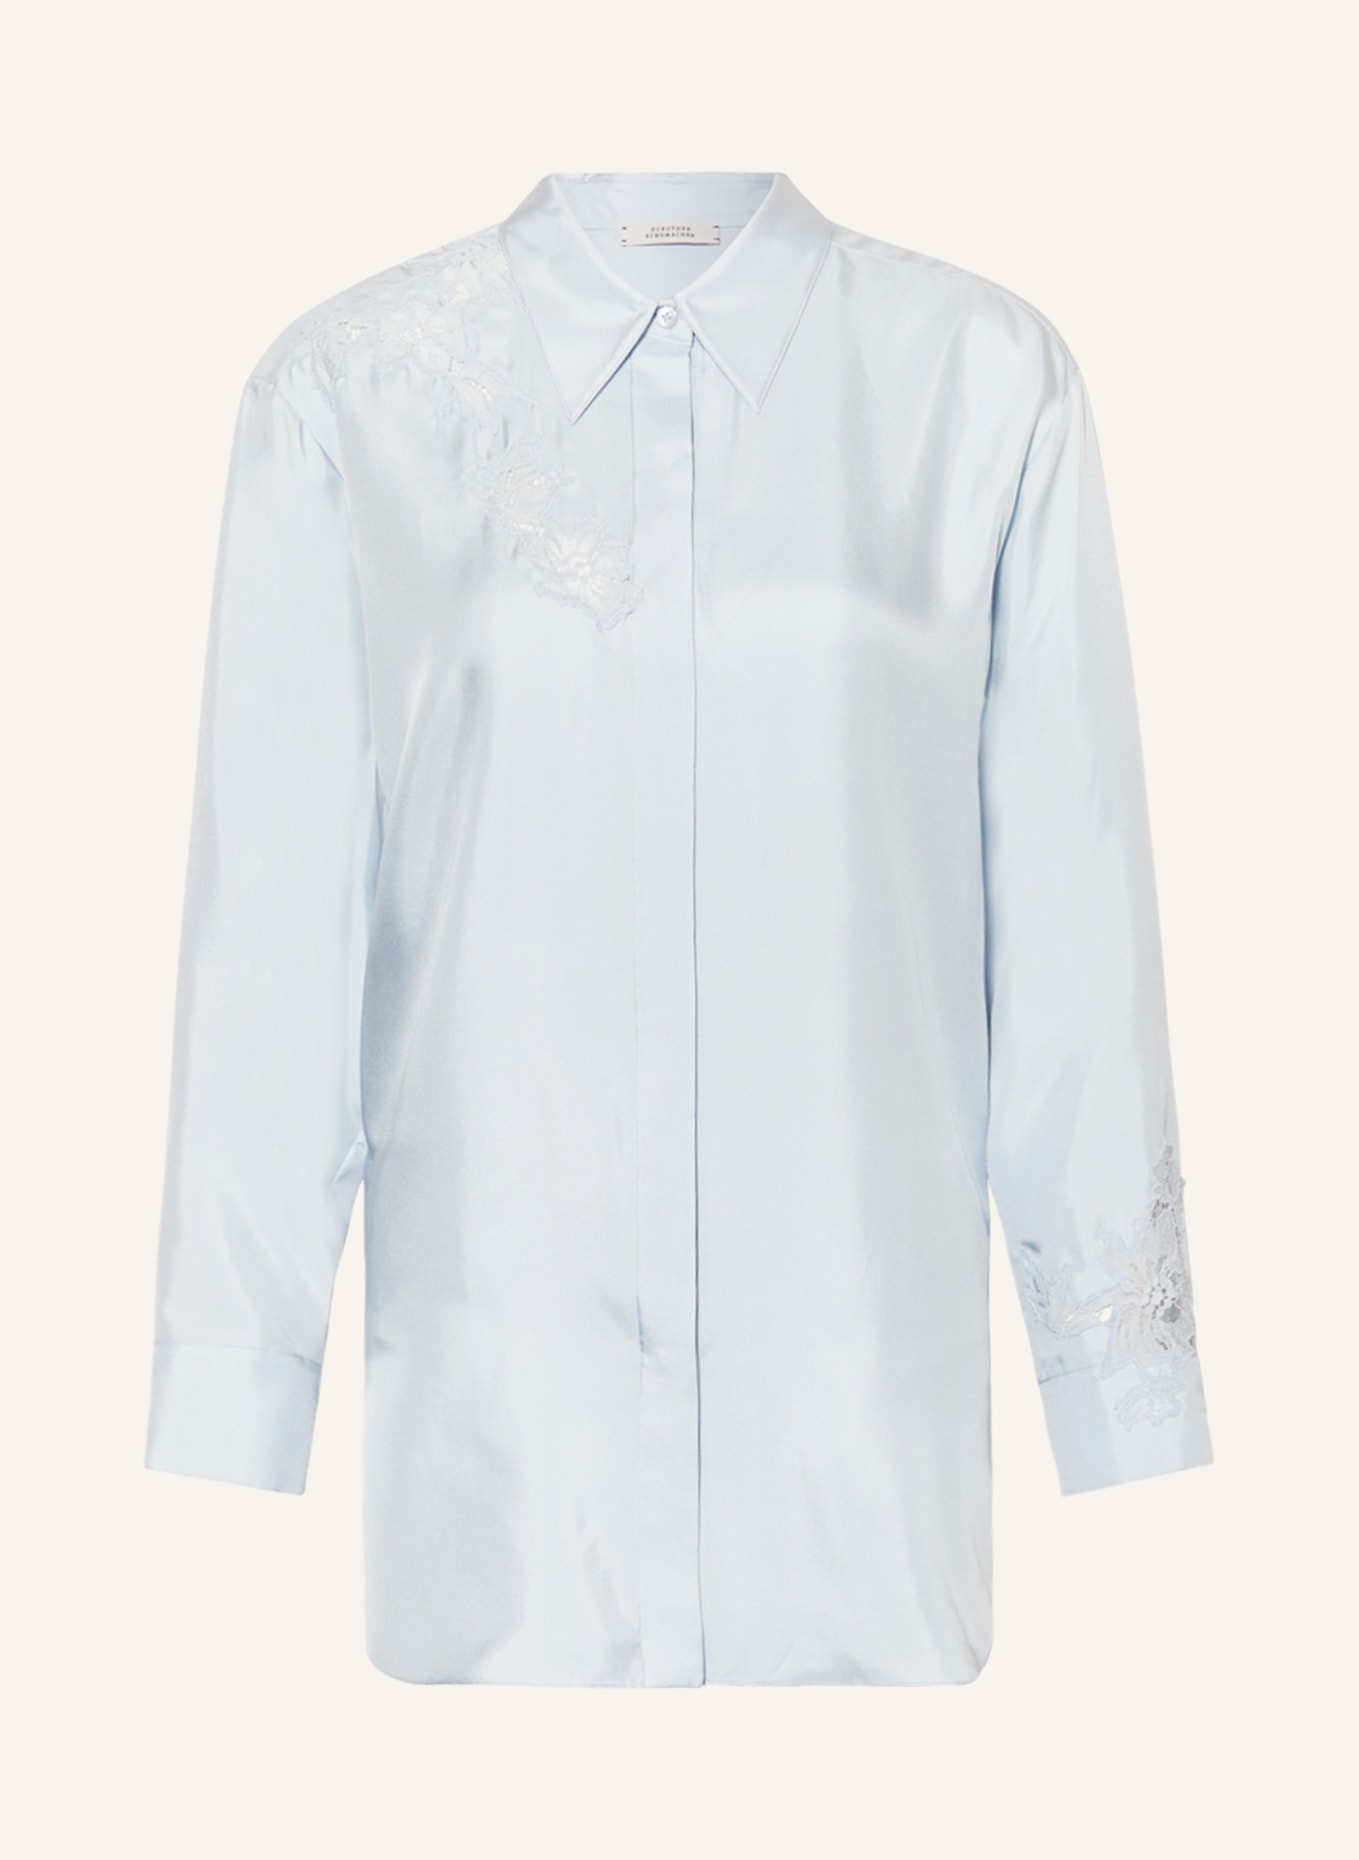 DOROTHEE SCHUMACHER Hemdbluse aus Seide mit Spitze, Farbe: HELLBLAU (Bild 1)